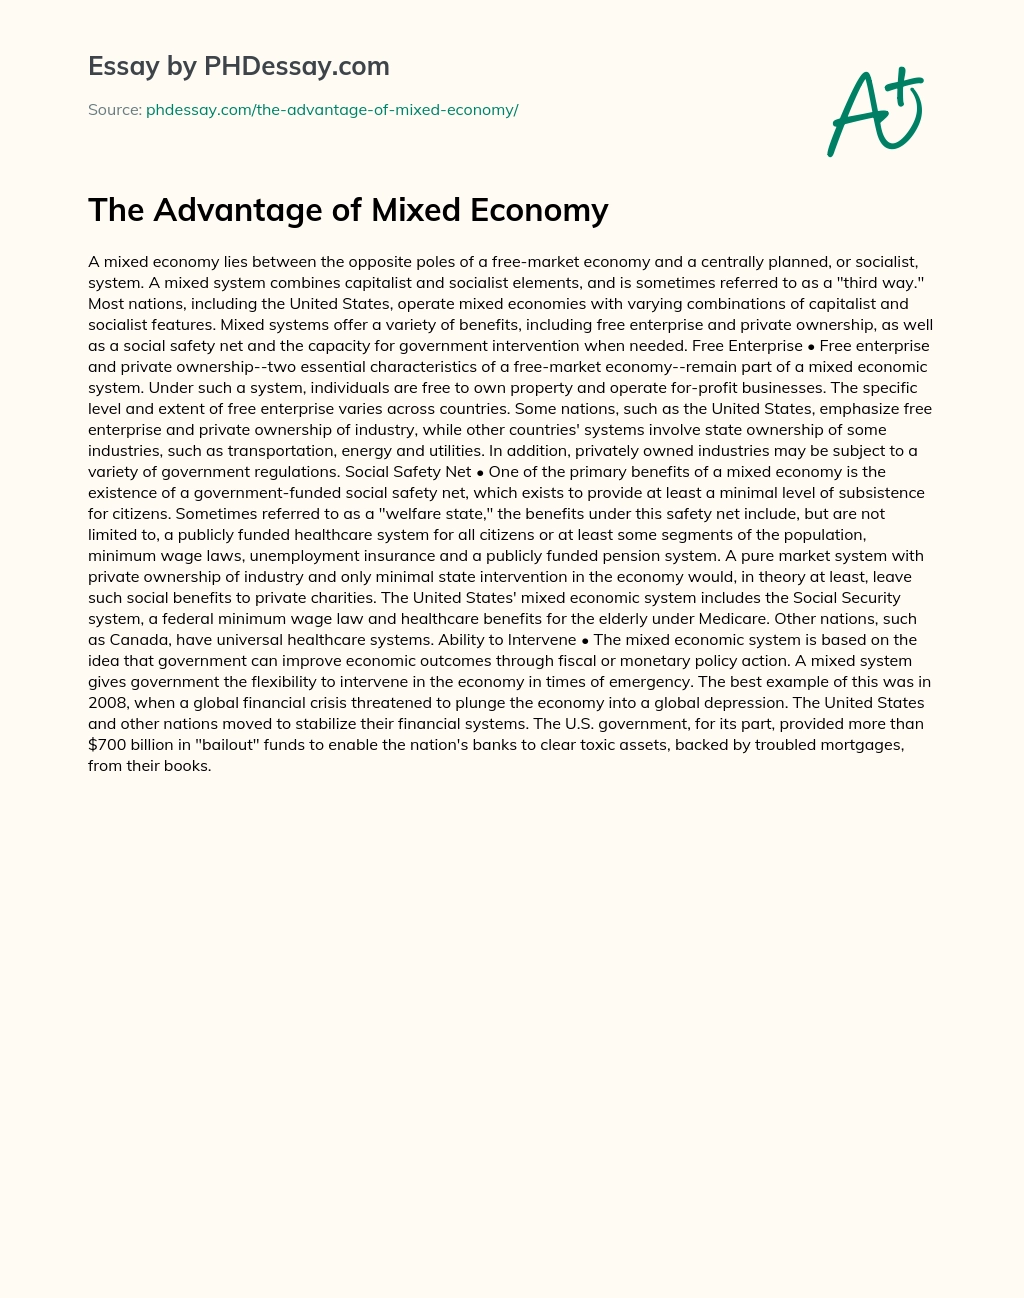 The Advantage of Mixed Economy essay